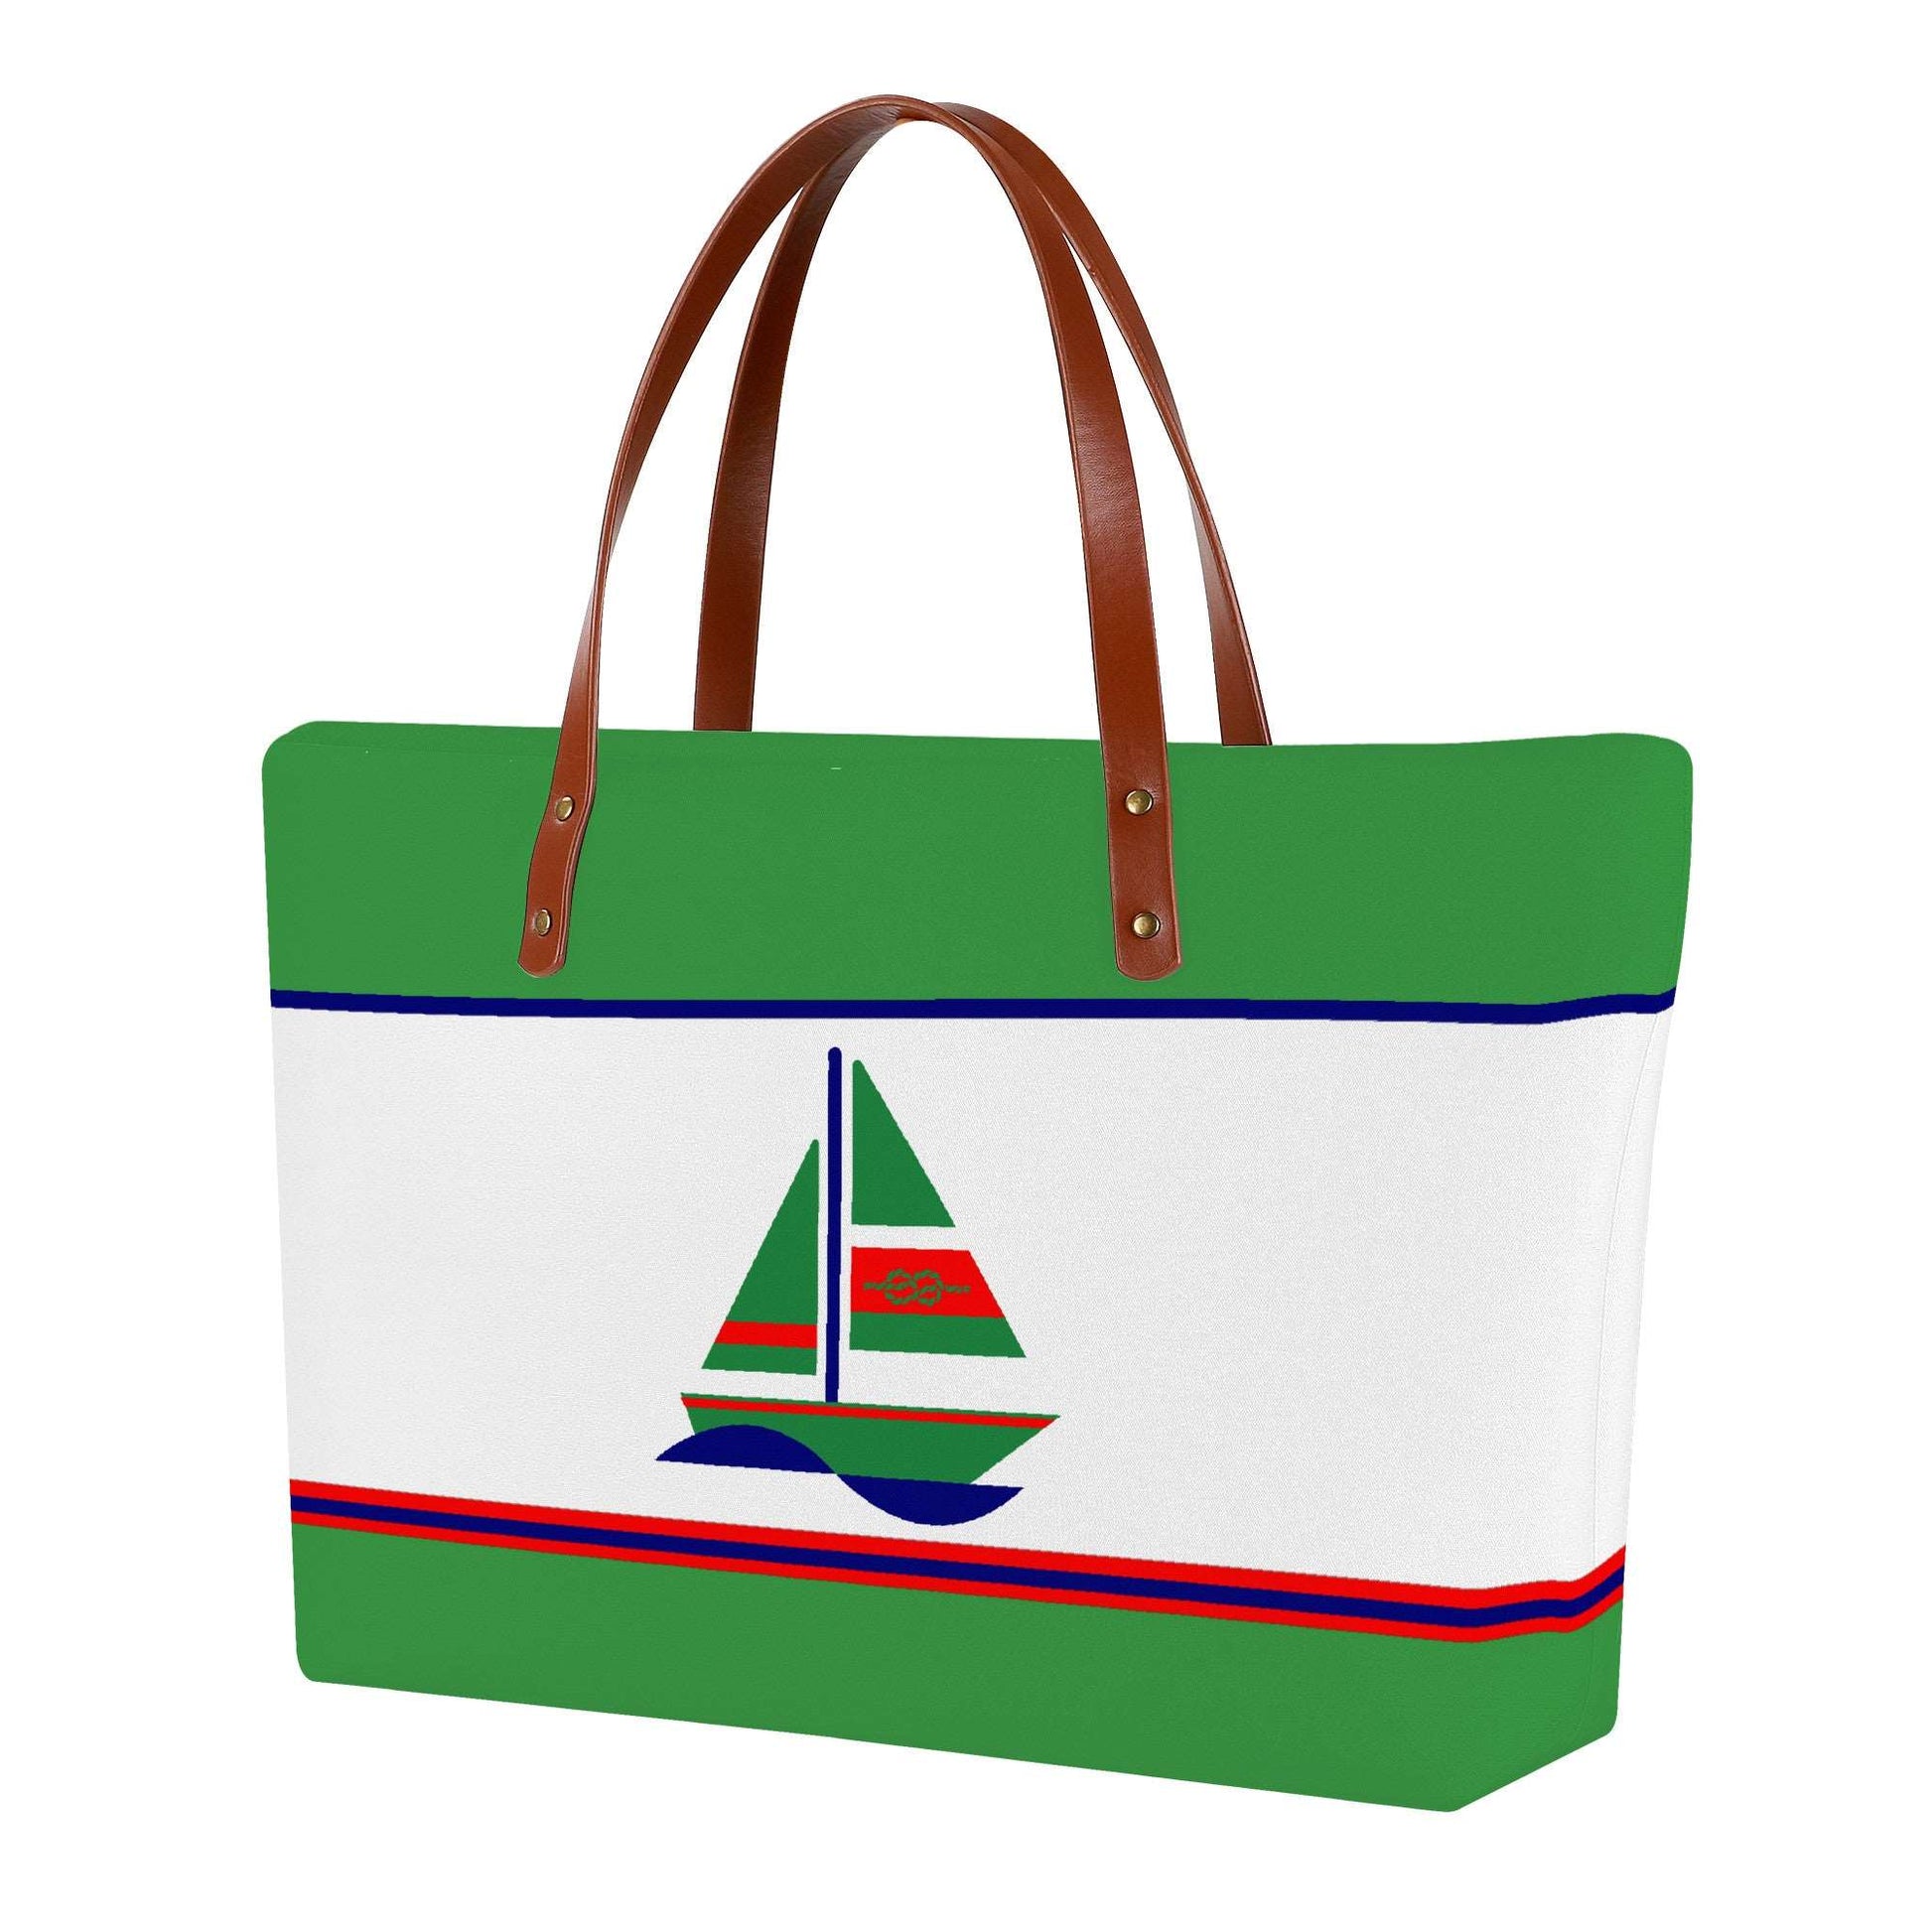 A Nautical Xmas - Everyday Tote Bag